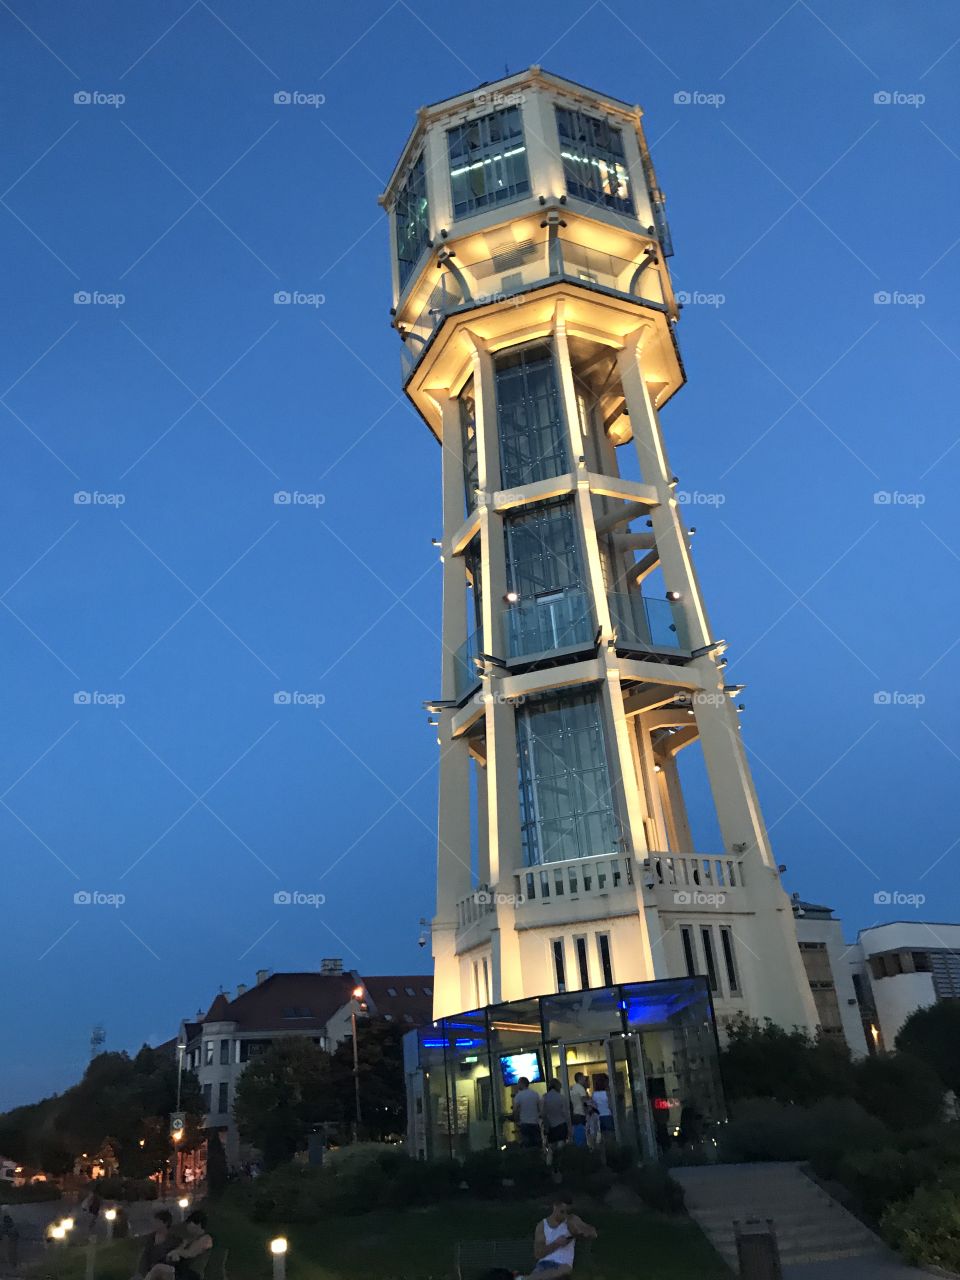 Tower
Siófok
Budapest